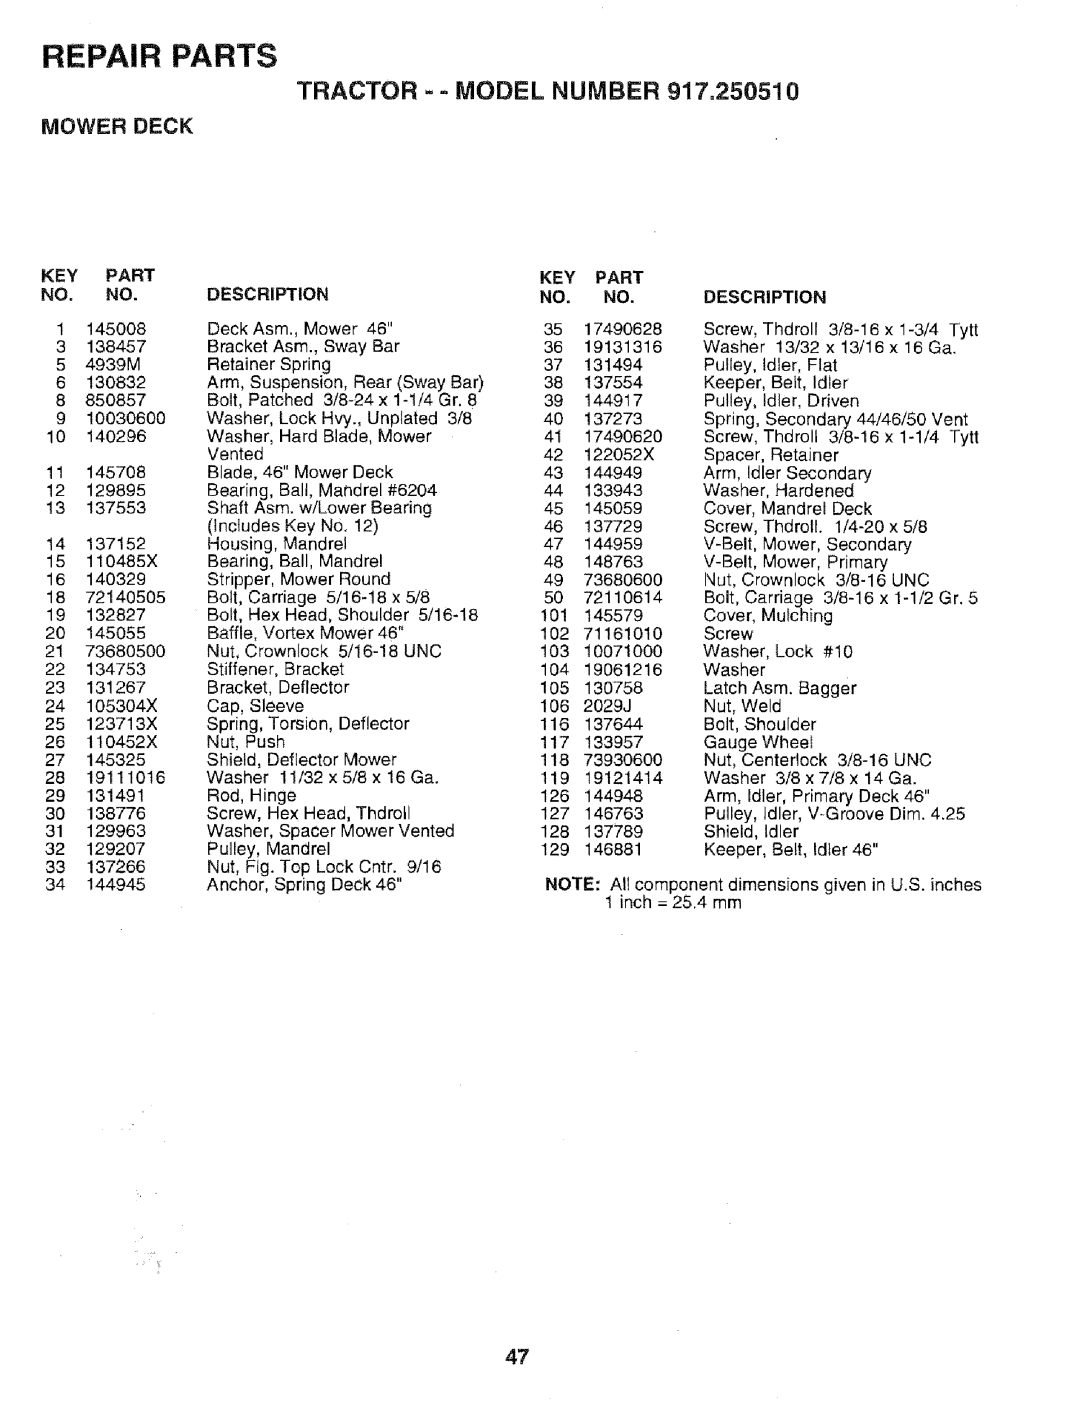 Sears 917.25051 manual TRACTOR =- MODEL NUMBER 917,250510, Repair Parts, Mower Deck, Key Part No. No, Description 